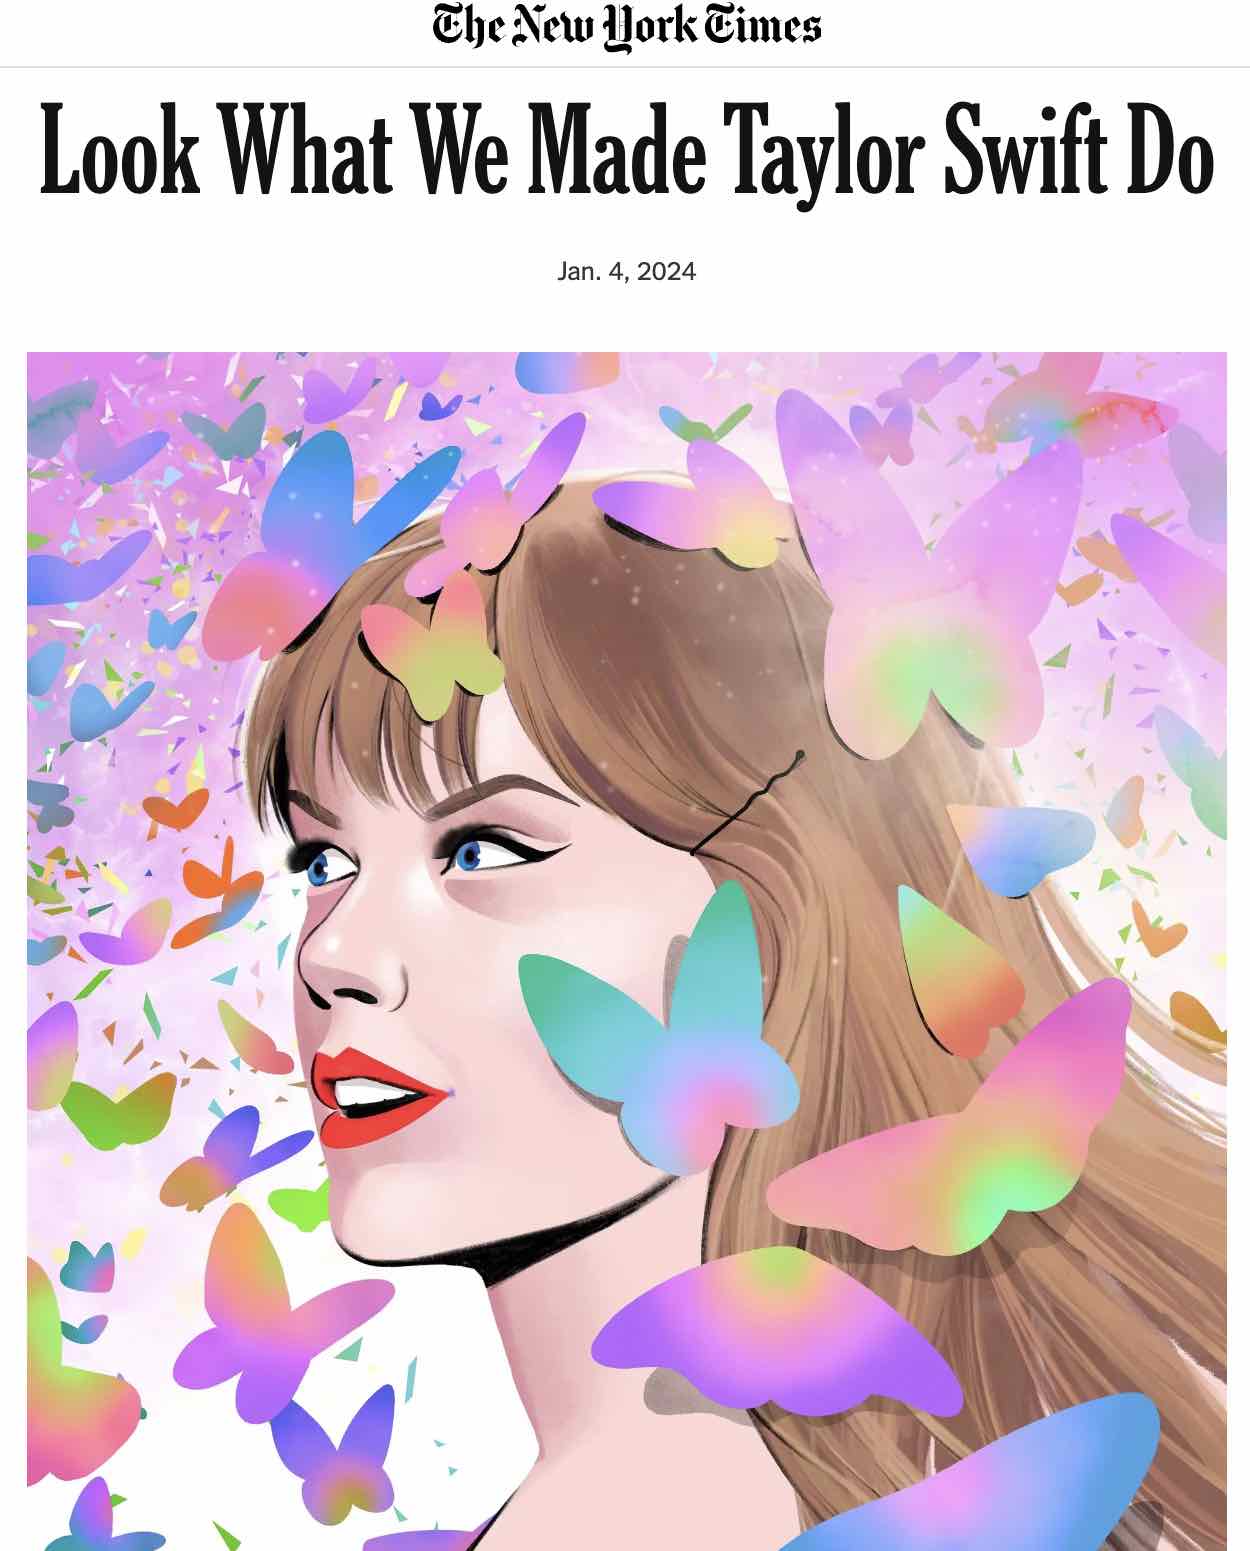 Artigo sobre Taylor Swift no New York Times 